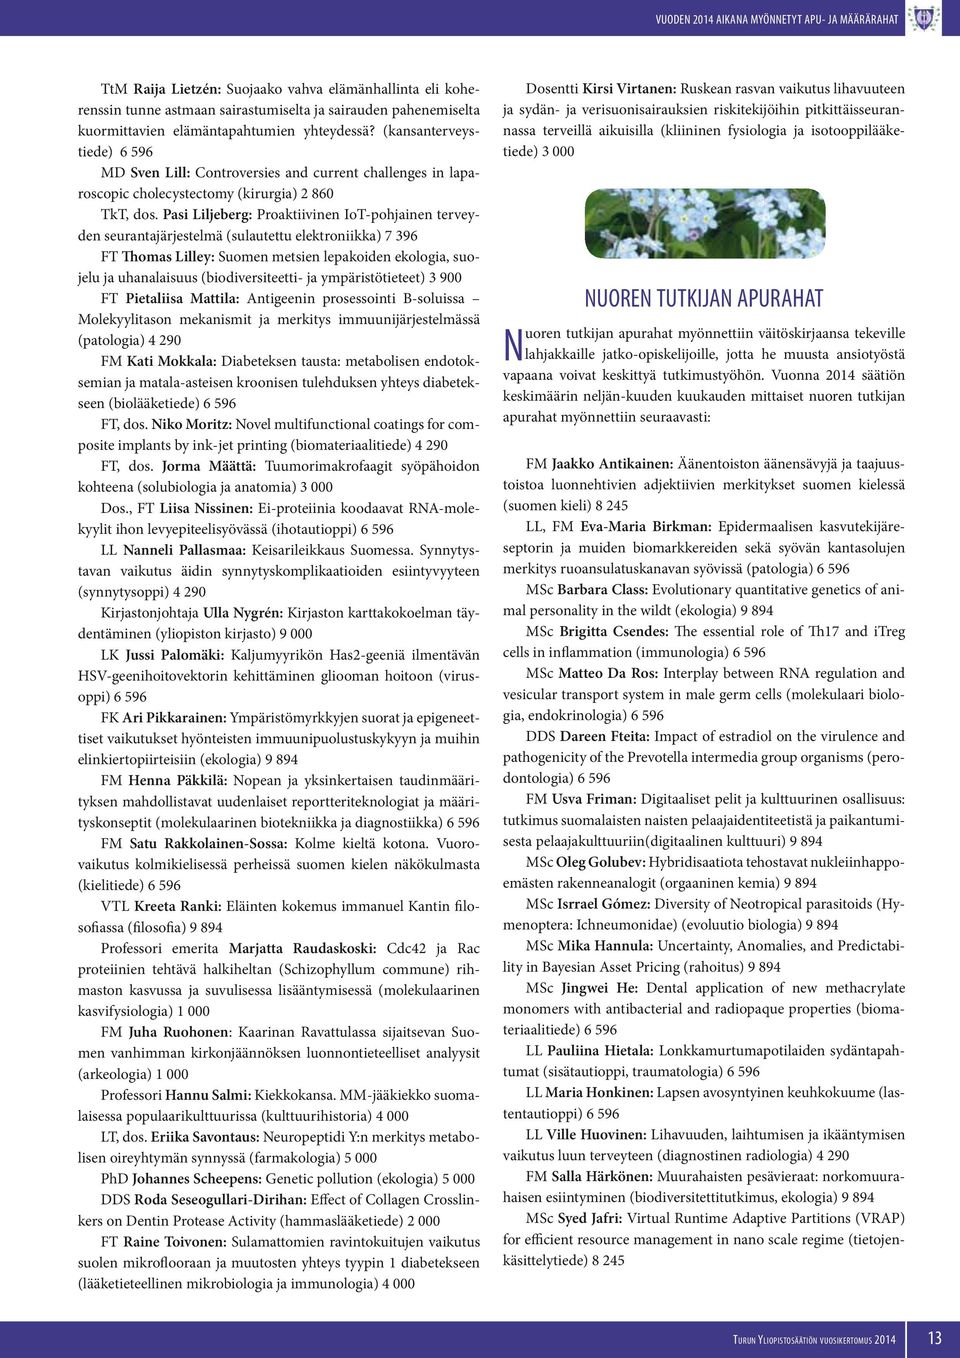 Pasi Liljeberg: Proaktiivinen IoT-pohjainen terveyden seurantajärjestelmä (sulautettu elektroniikka) 7 396 FT Thomas Lilley: Suomen metsien lepakoiden ekologia, suojelu ja uhanalaisuus